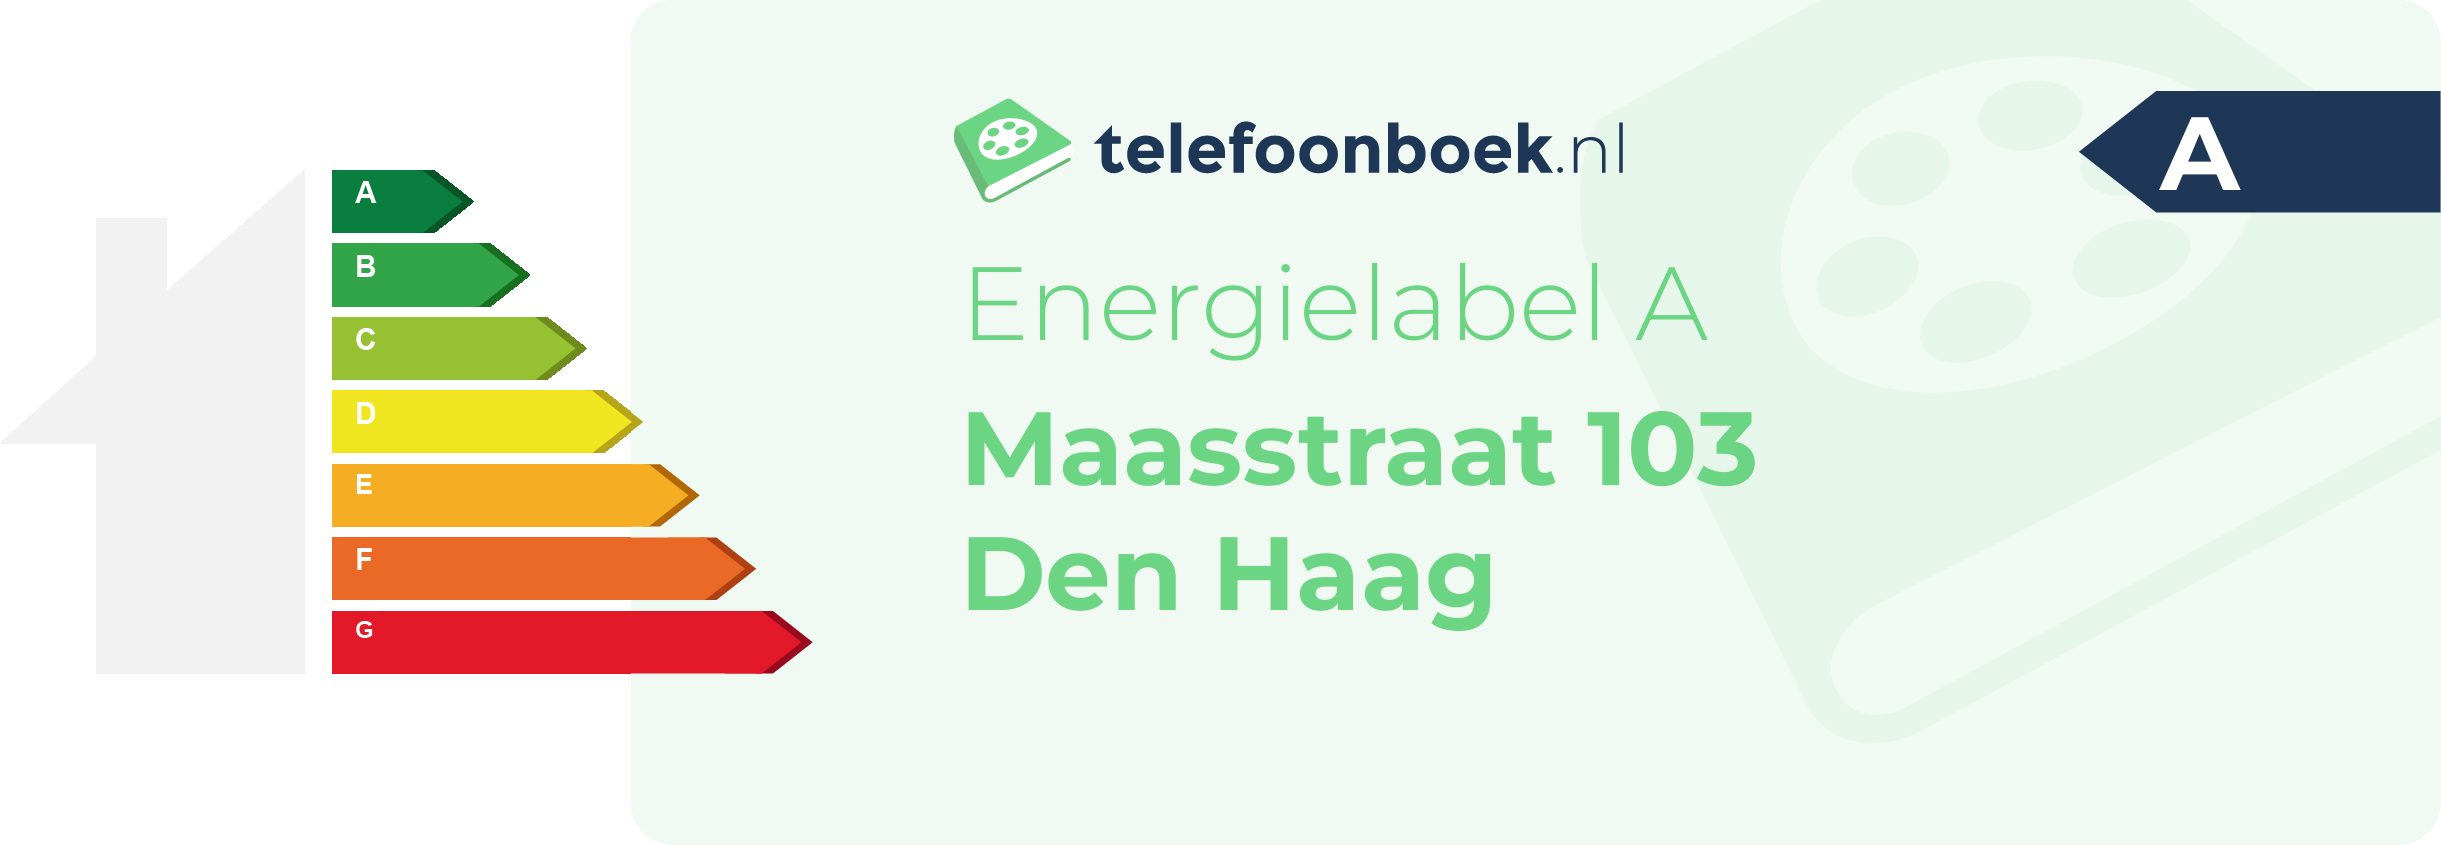 Energielabel Maasstraat 103 Den Haag